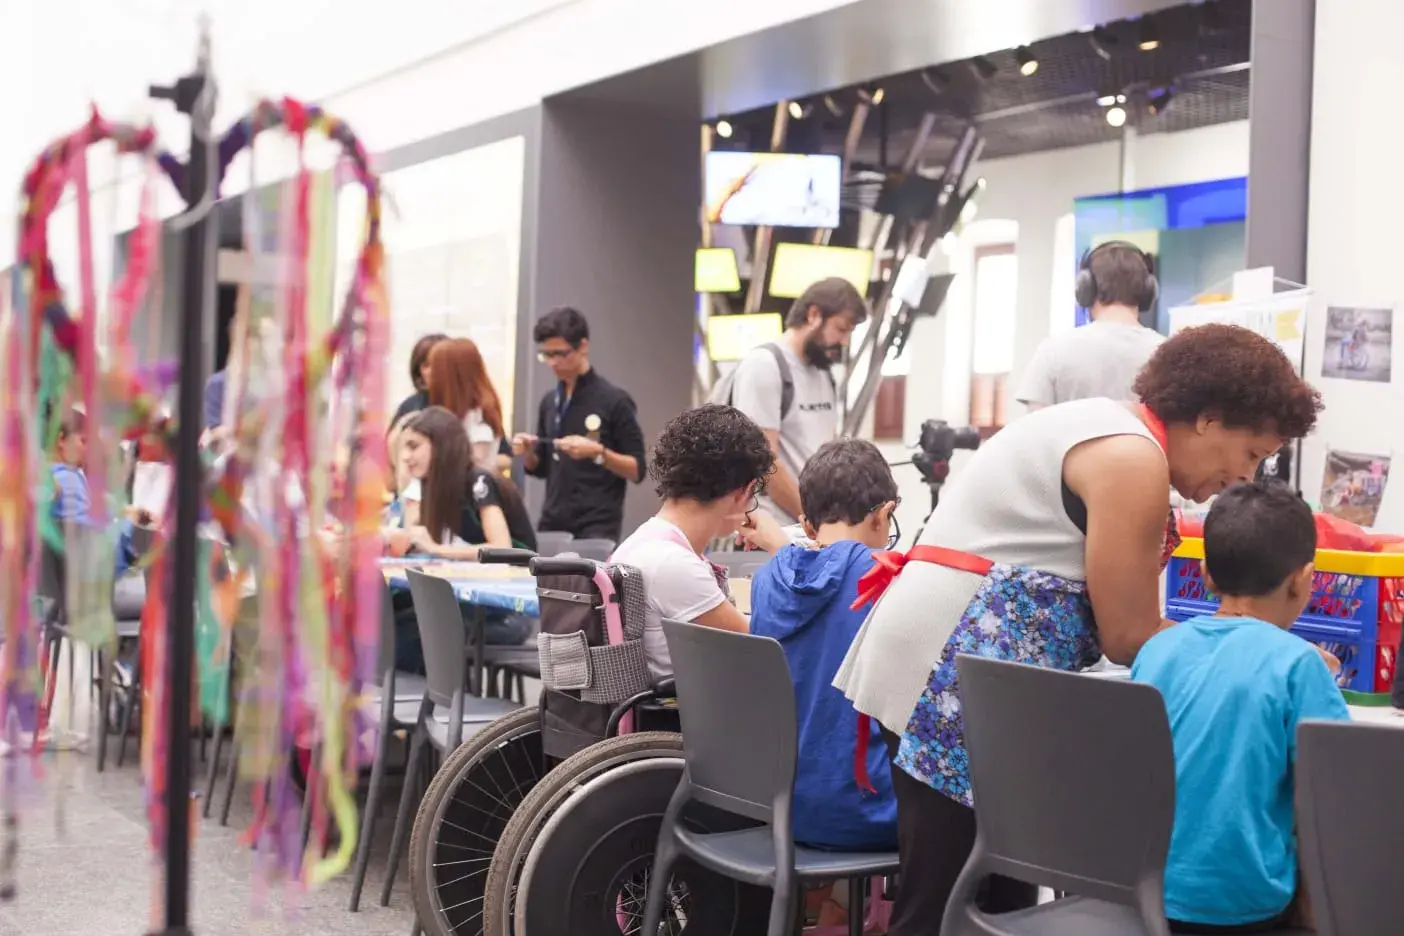 LACRE DO BEM: Projeto oferece aulas gratuitas de artes plásticas para todos os públicos